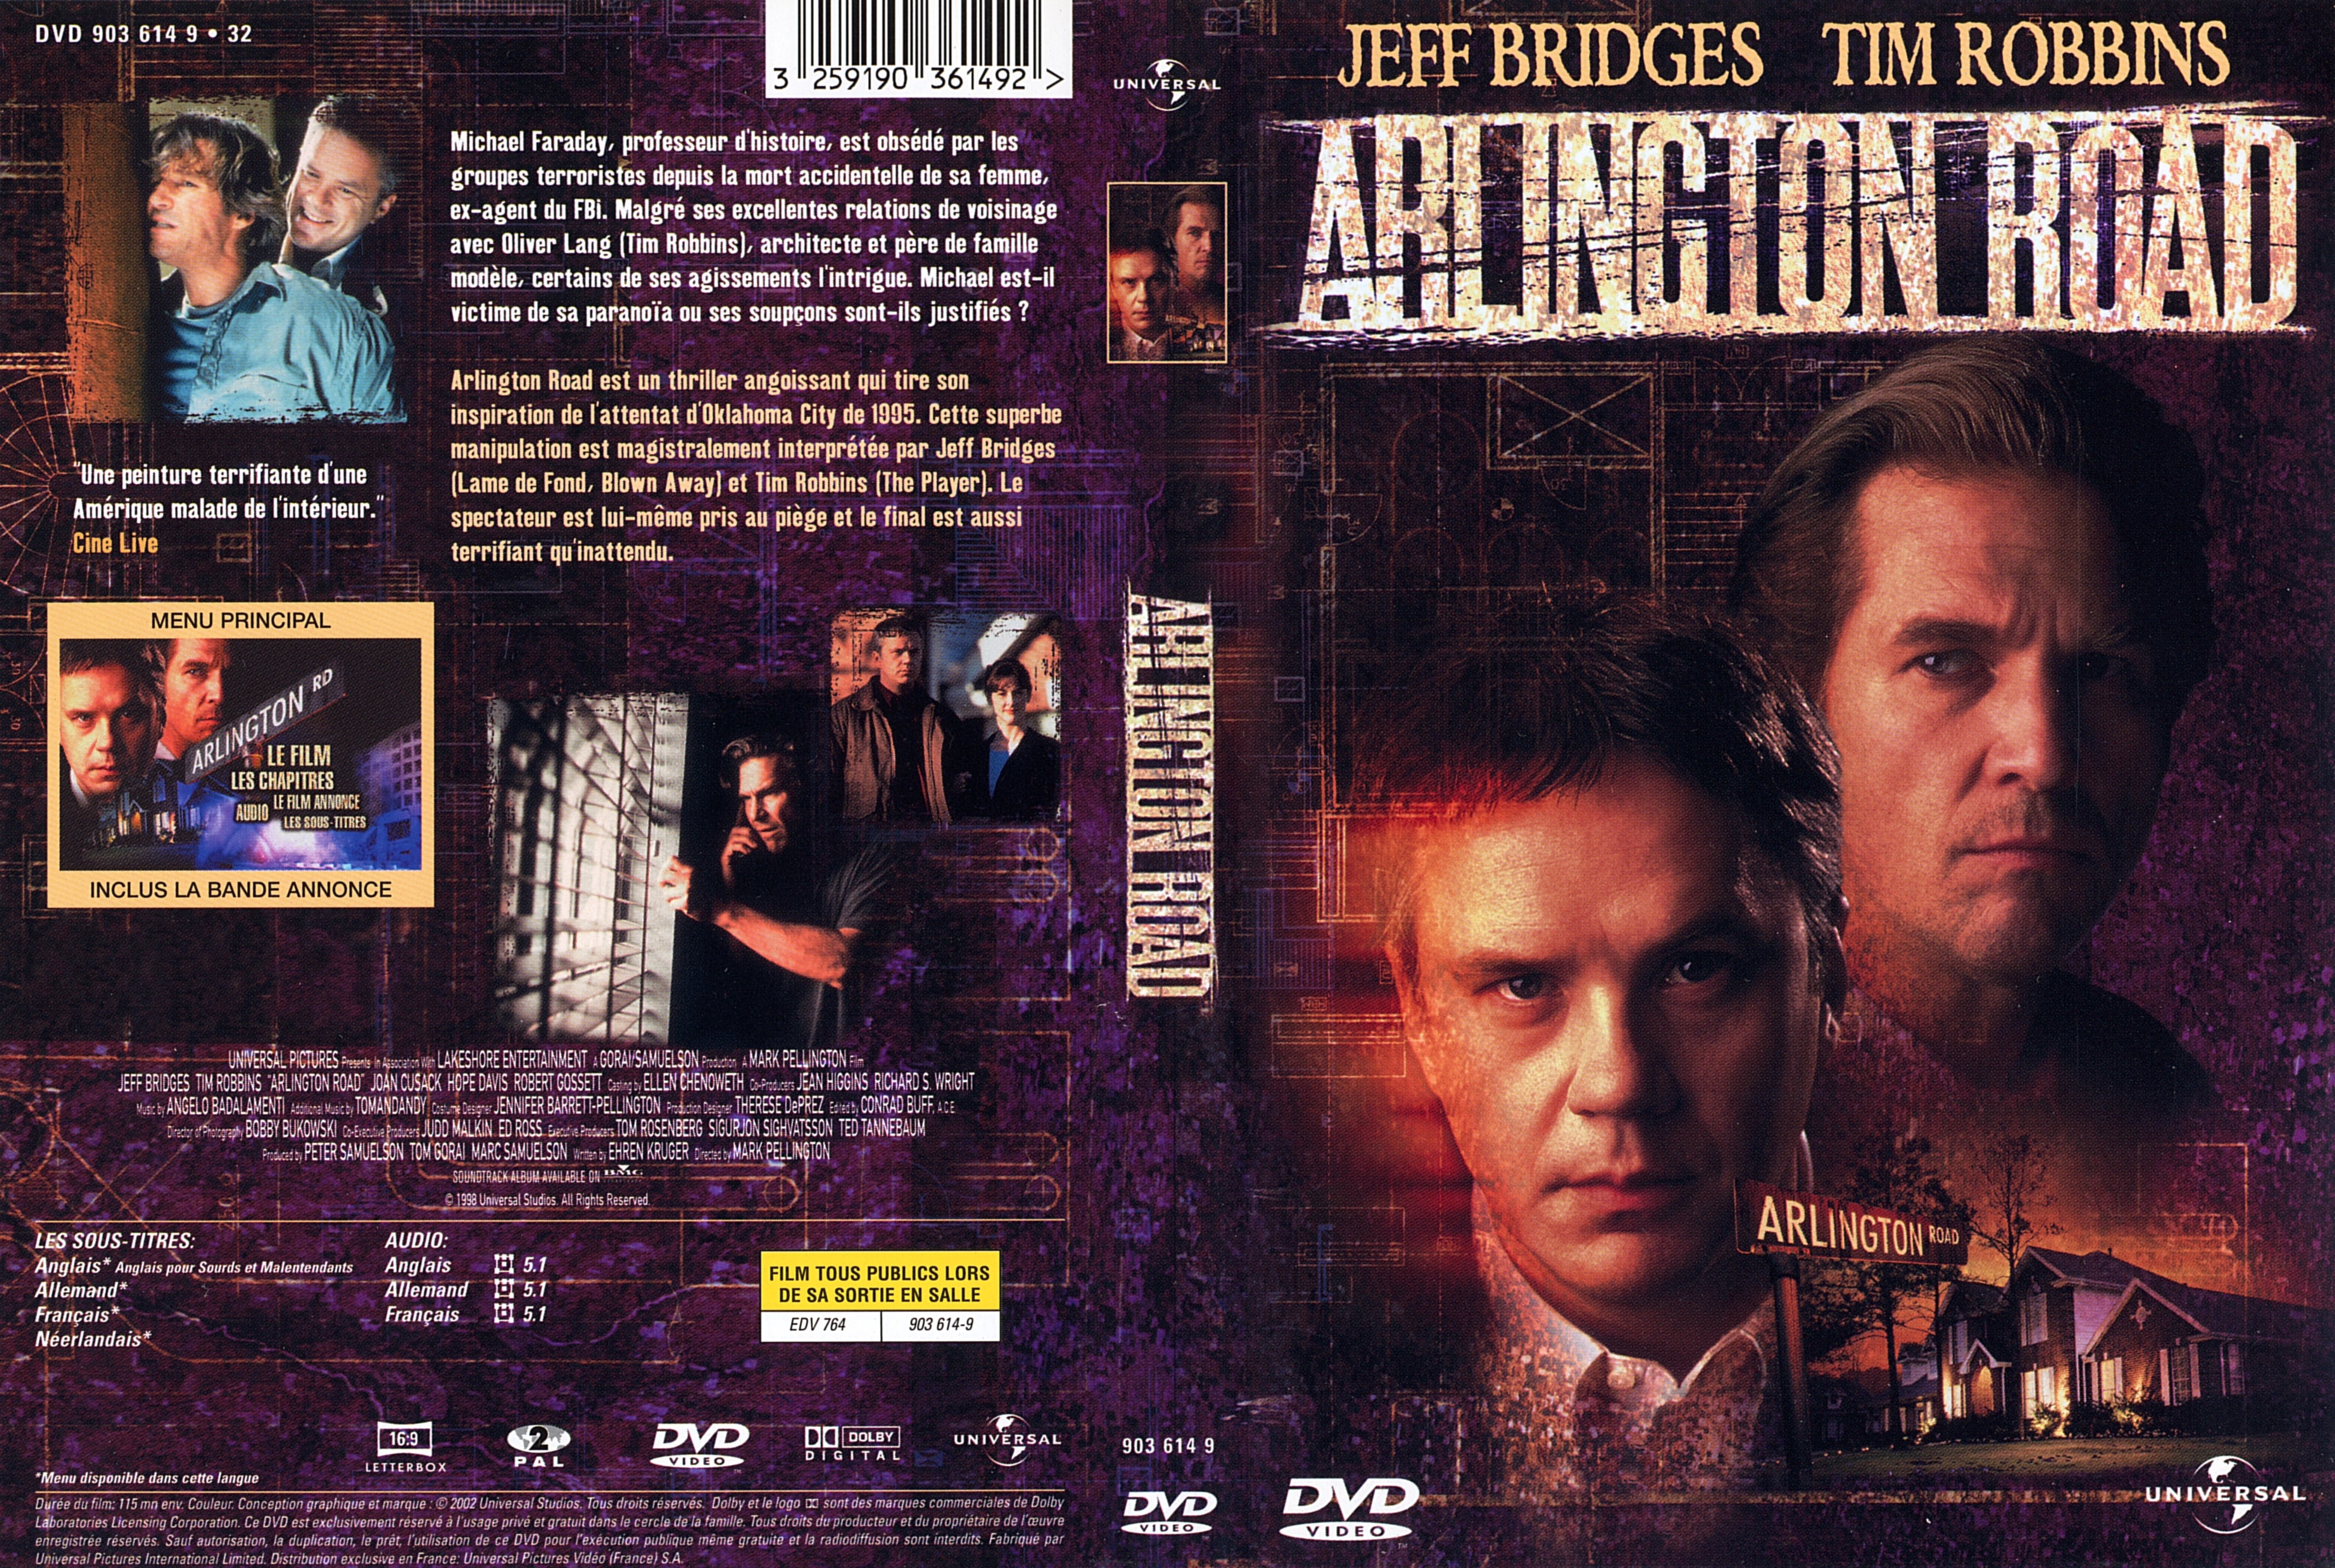 Jaquette DVD Arlington road